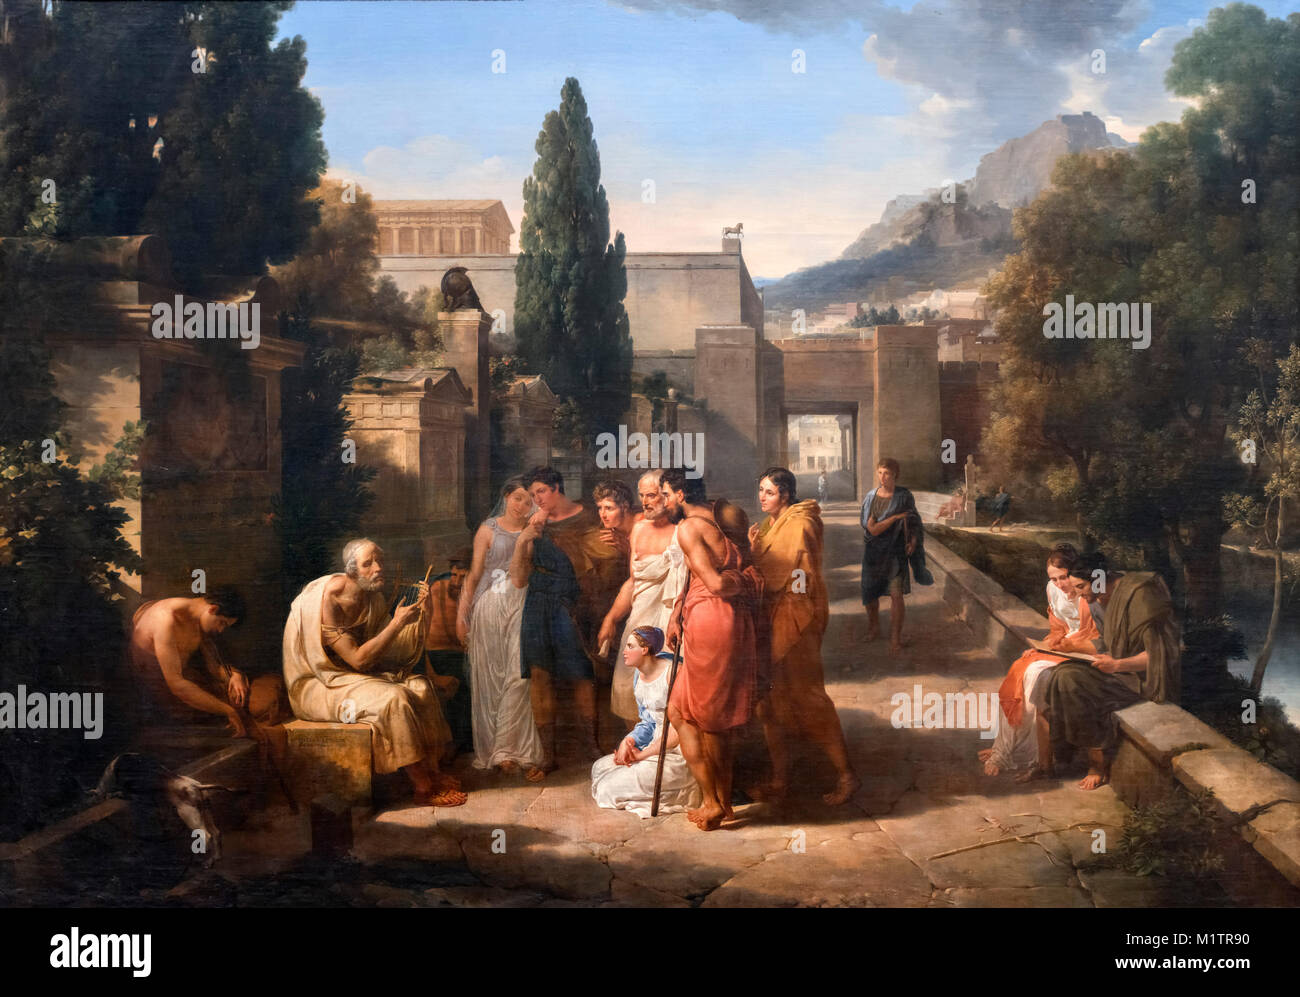 Son chant d'Homère Iliade à l'entrée d'Athènes par Guillaume Lethiere (1760-1832), huile sur toile, 1811. Banque D'Images